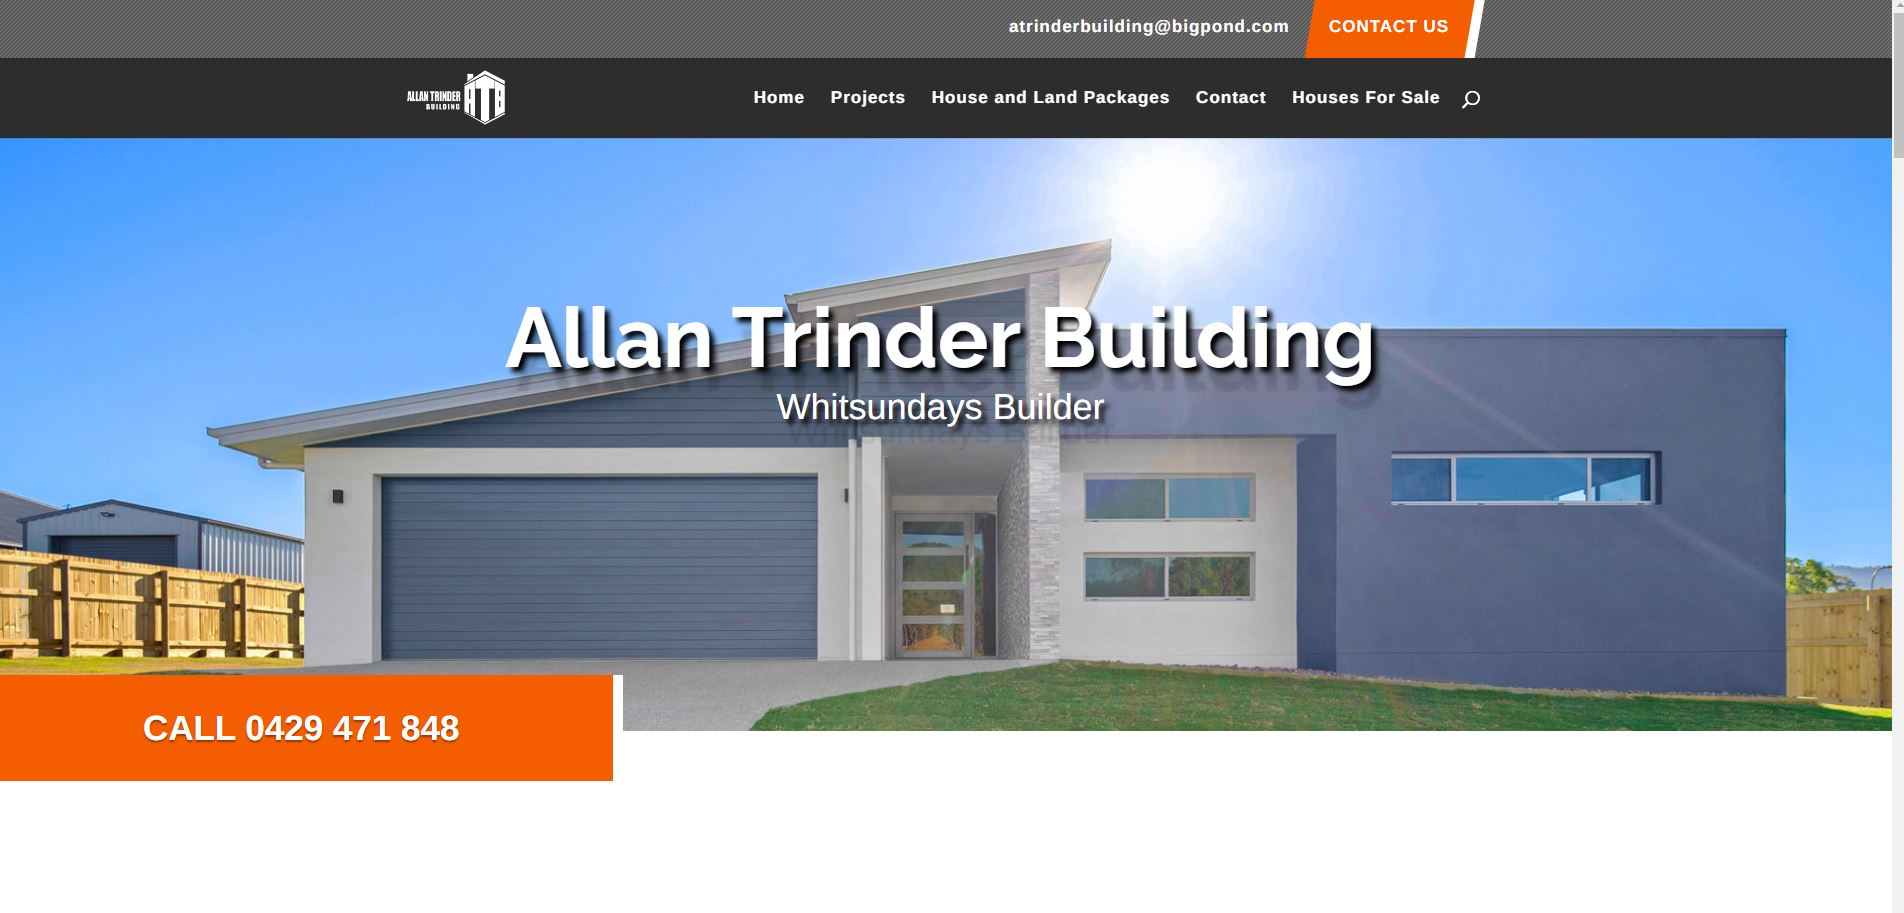 allan trinder building website design